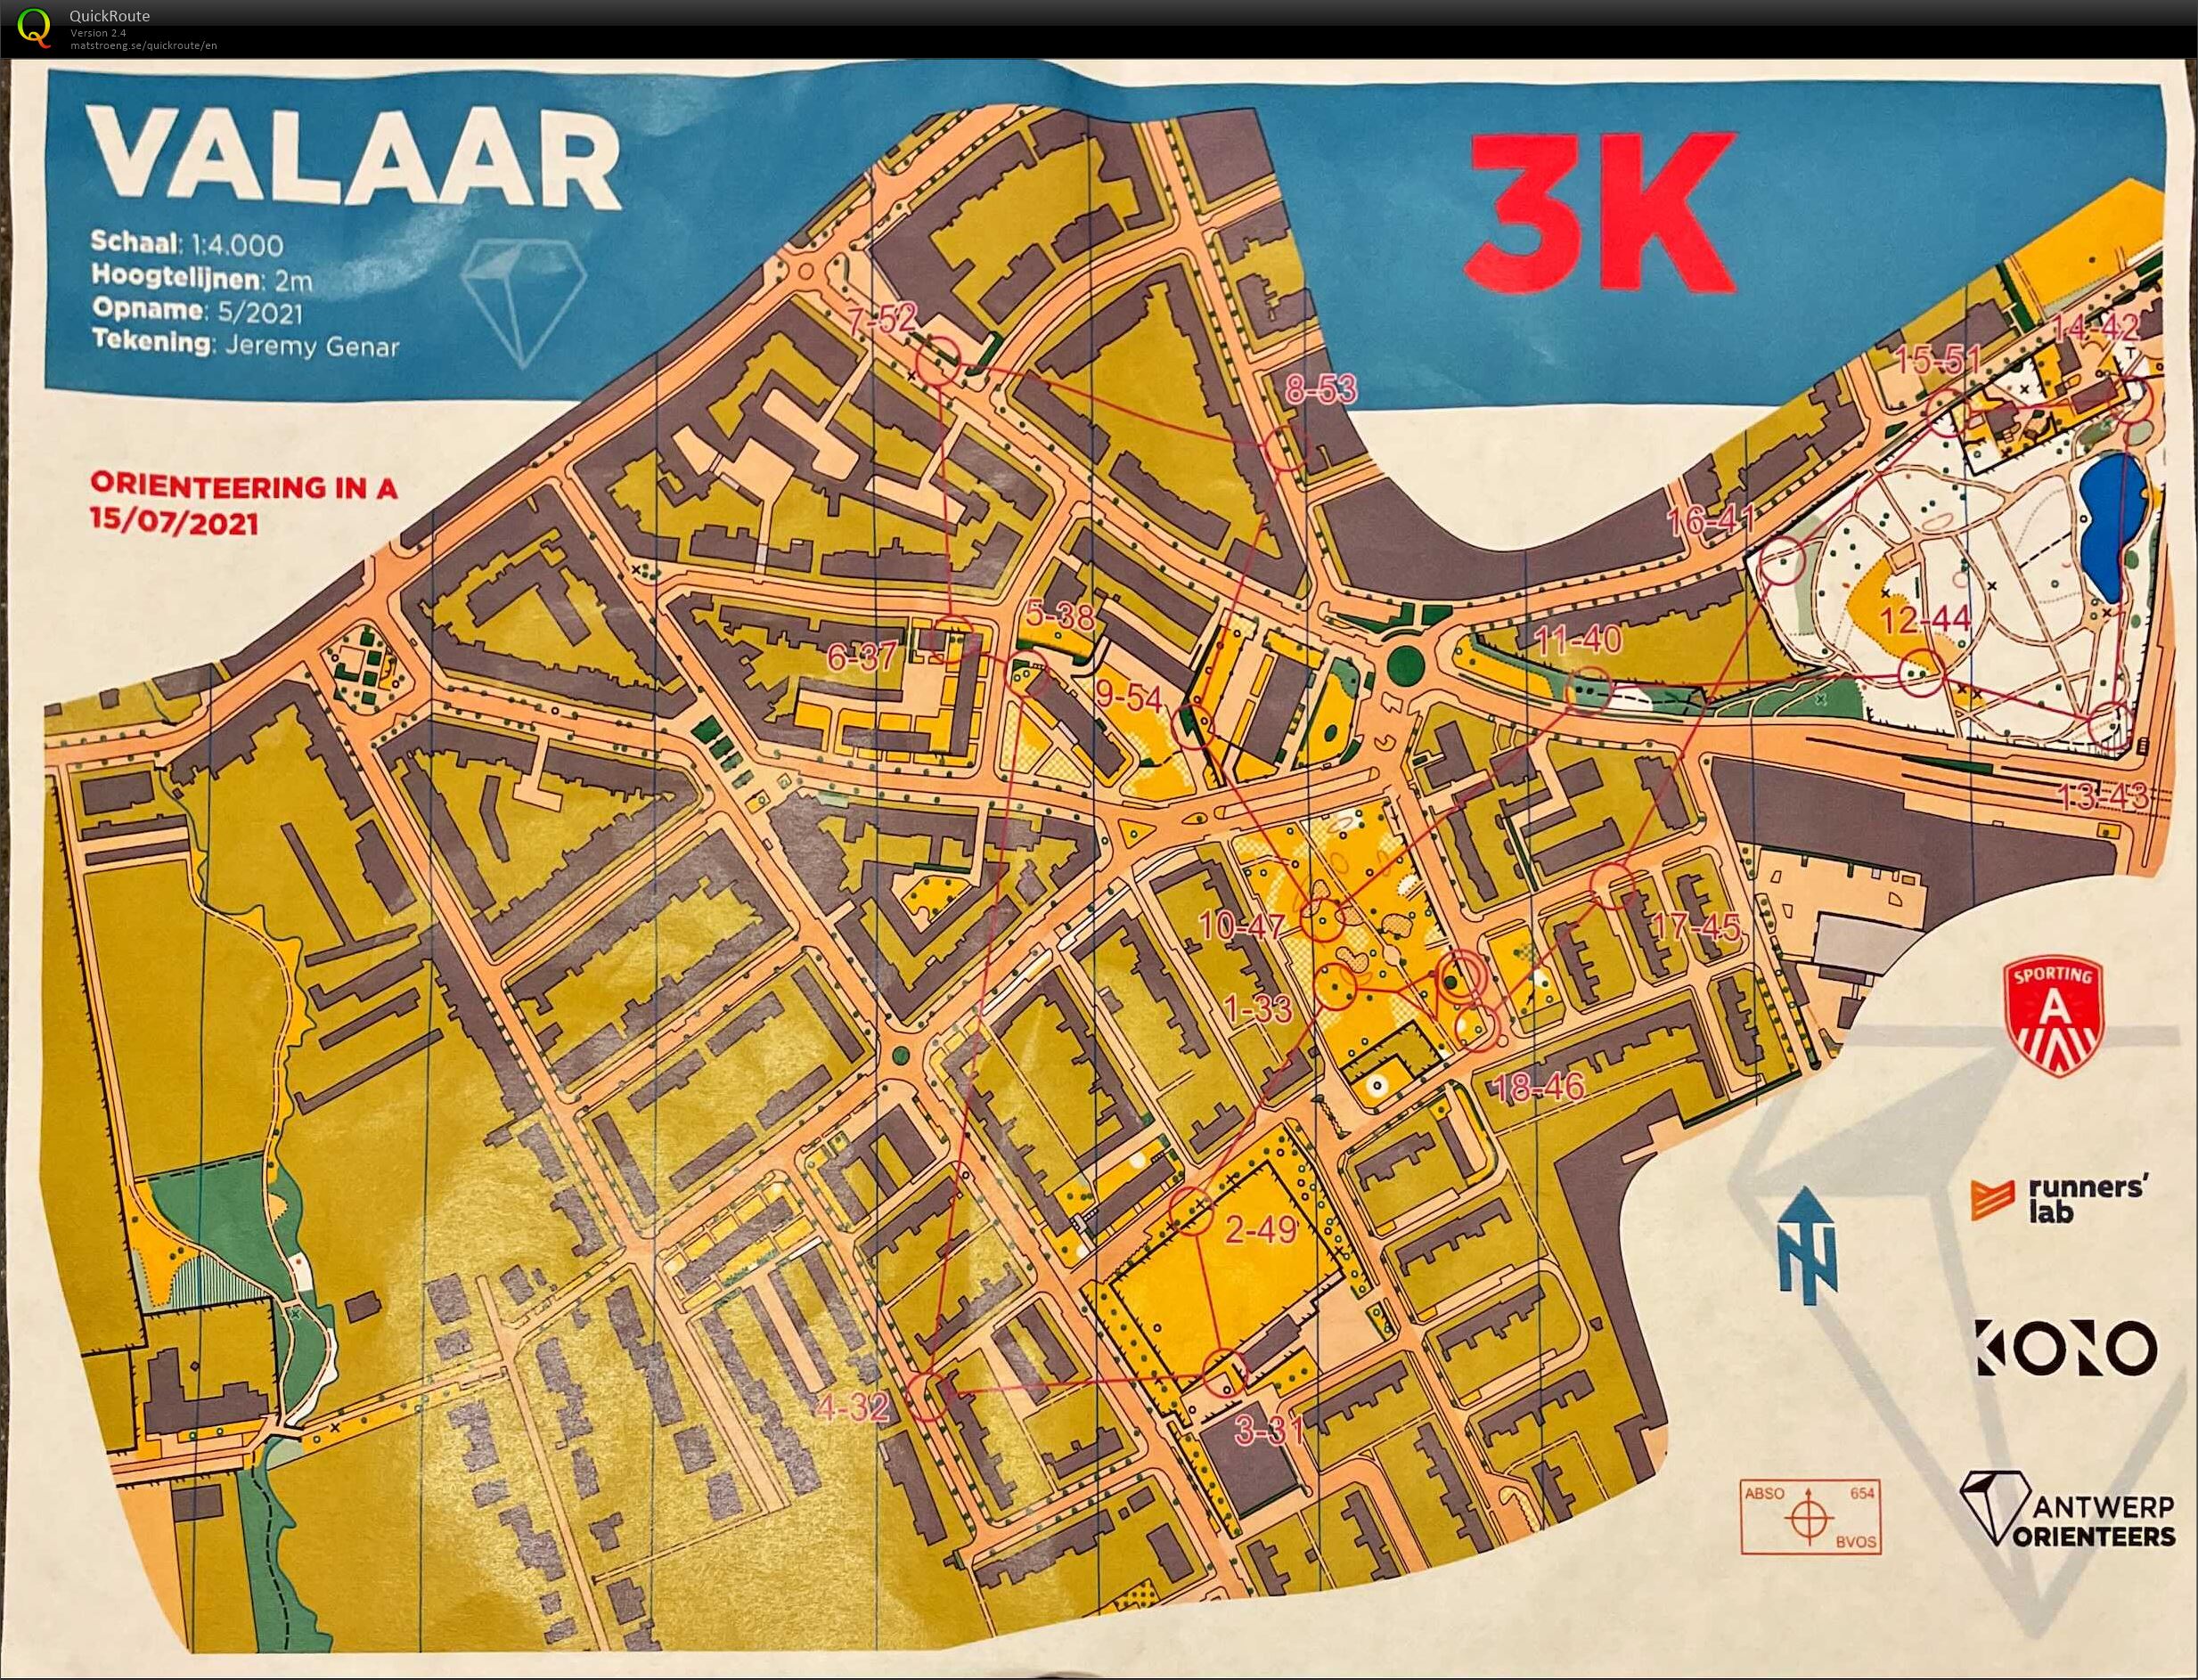 Orienteering in A - Wilrijk Valaar - 3K (2021-07-15)